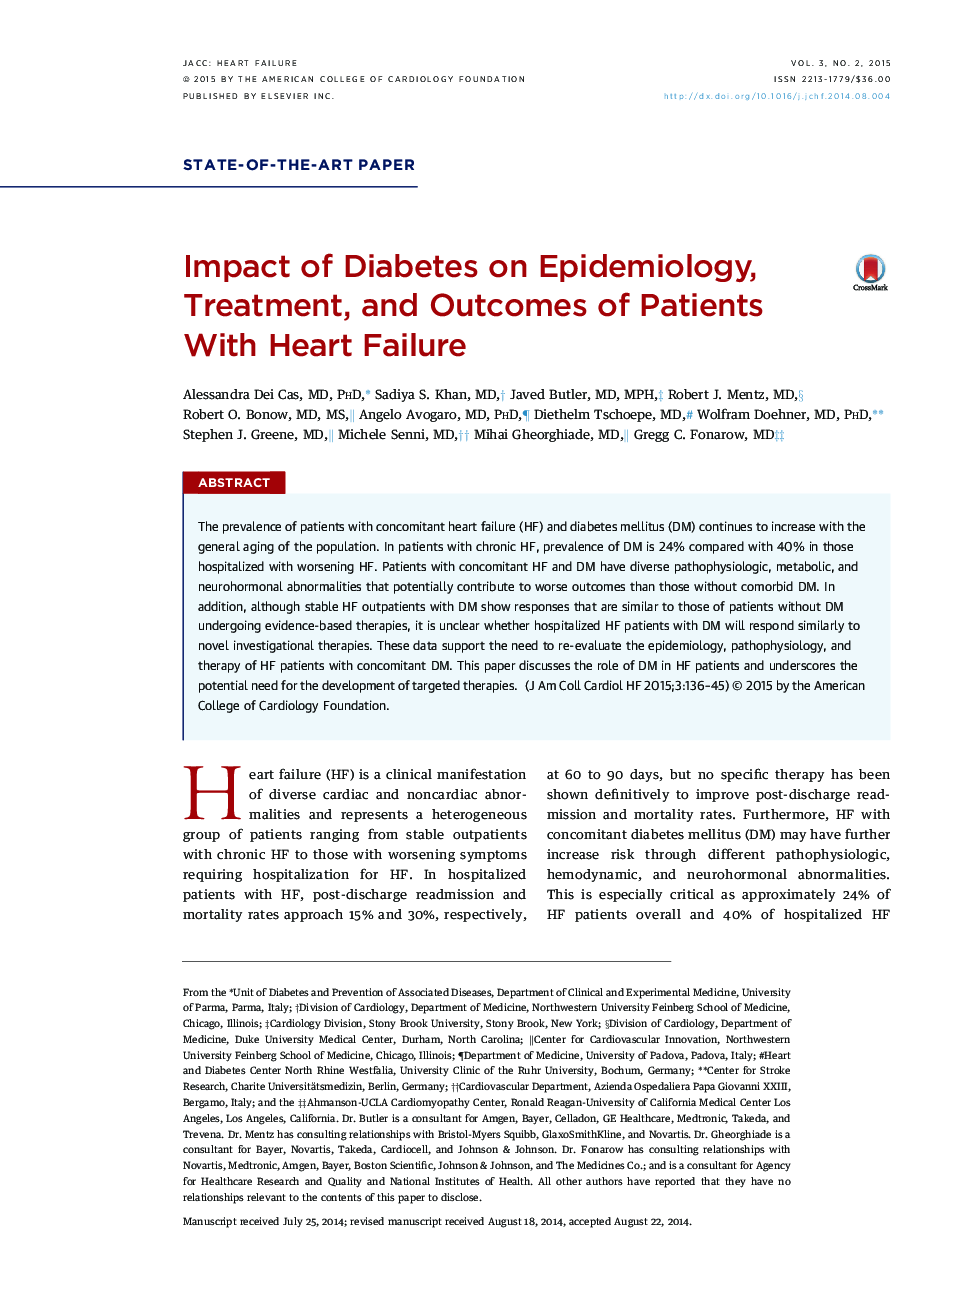 تأثیر دیابت بر اپیدمیولوژی، درمان و نتایج بیماران مبتلا به نارسایی قلب 